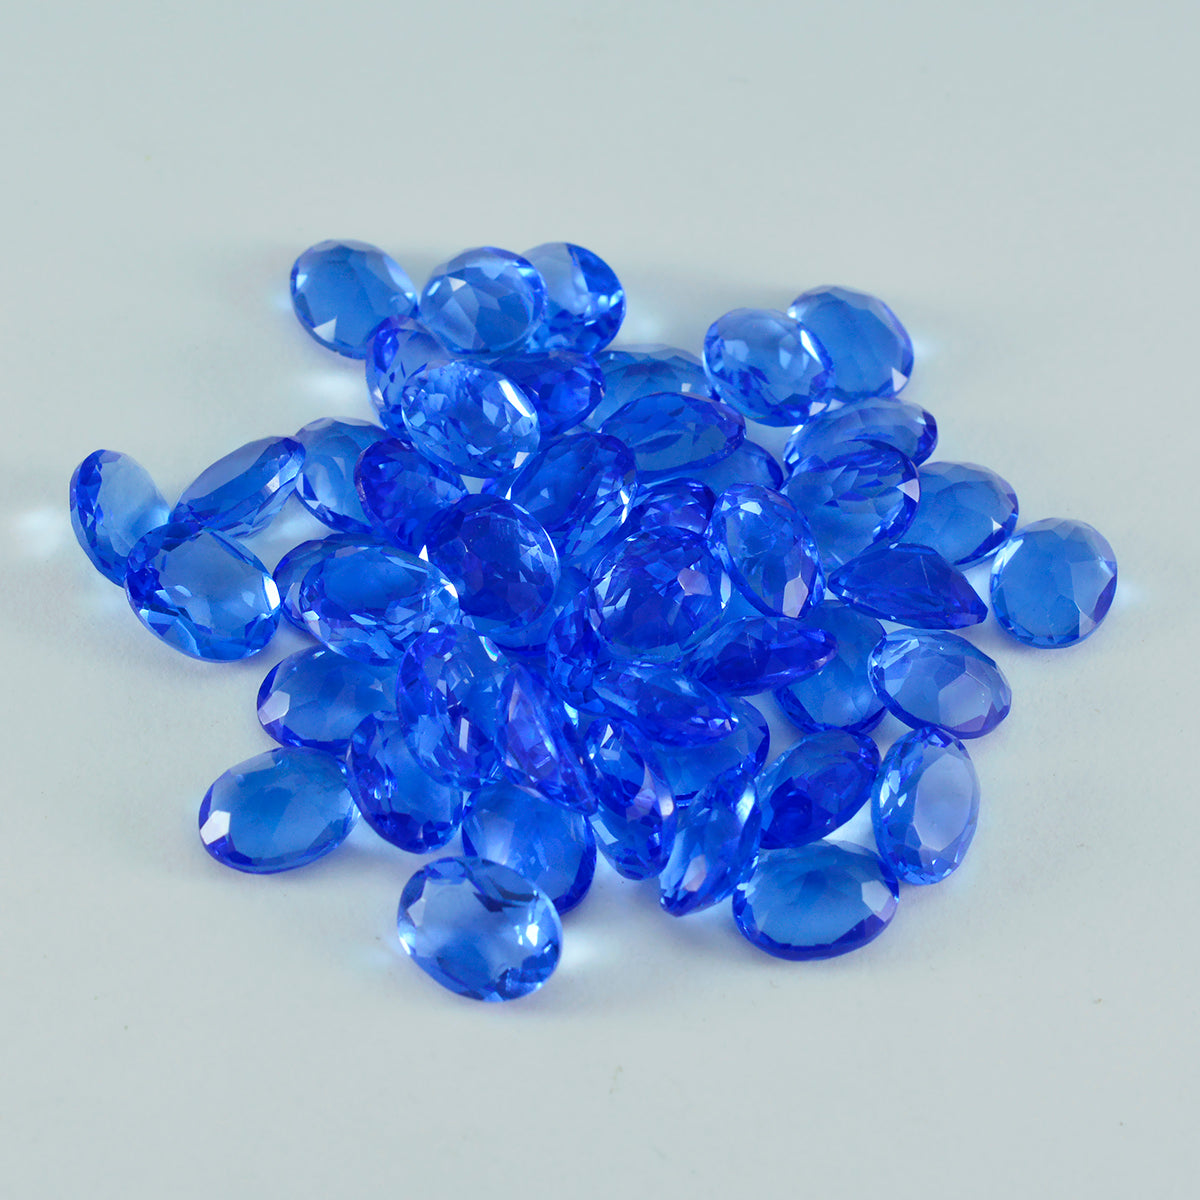 Riyogems 1 pieza de zafiro azul CZ facetado 0.197 x 0.276 in forma ovalada A+ calidad piedra preciosa suelta